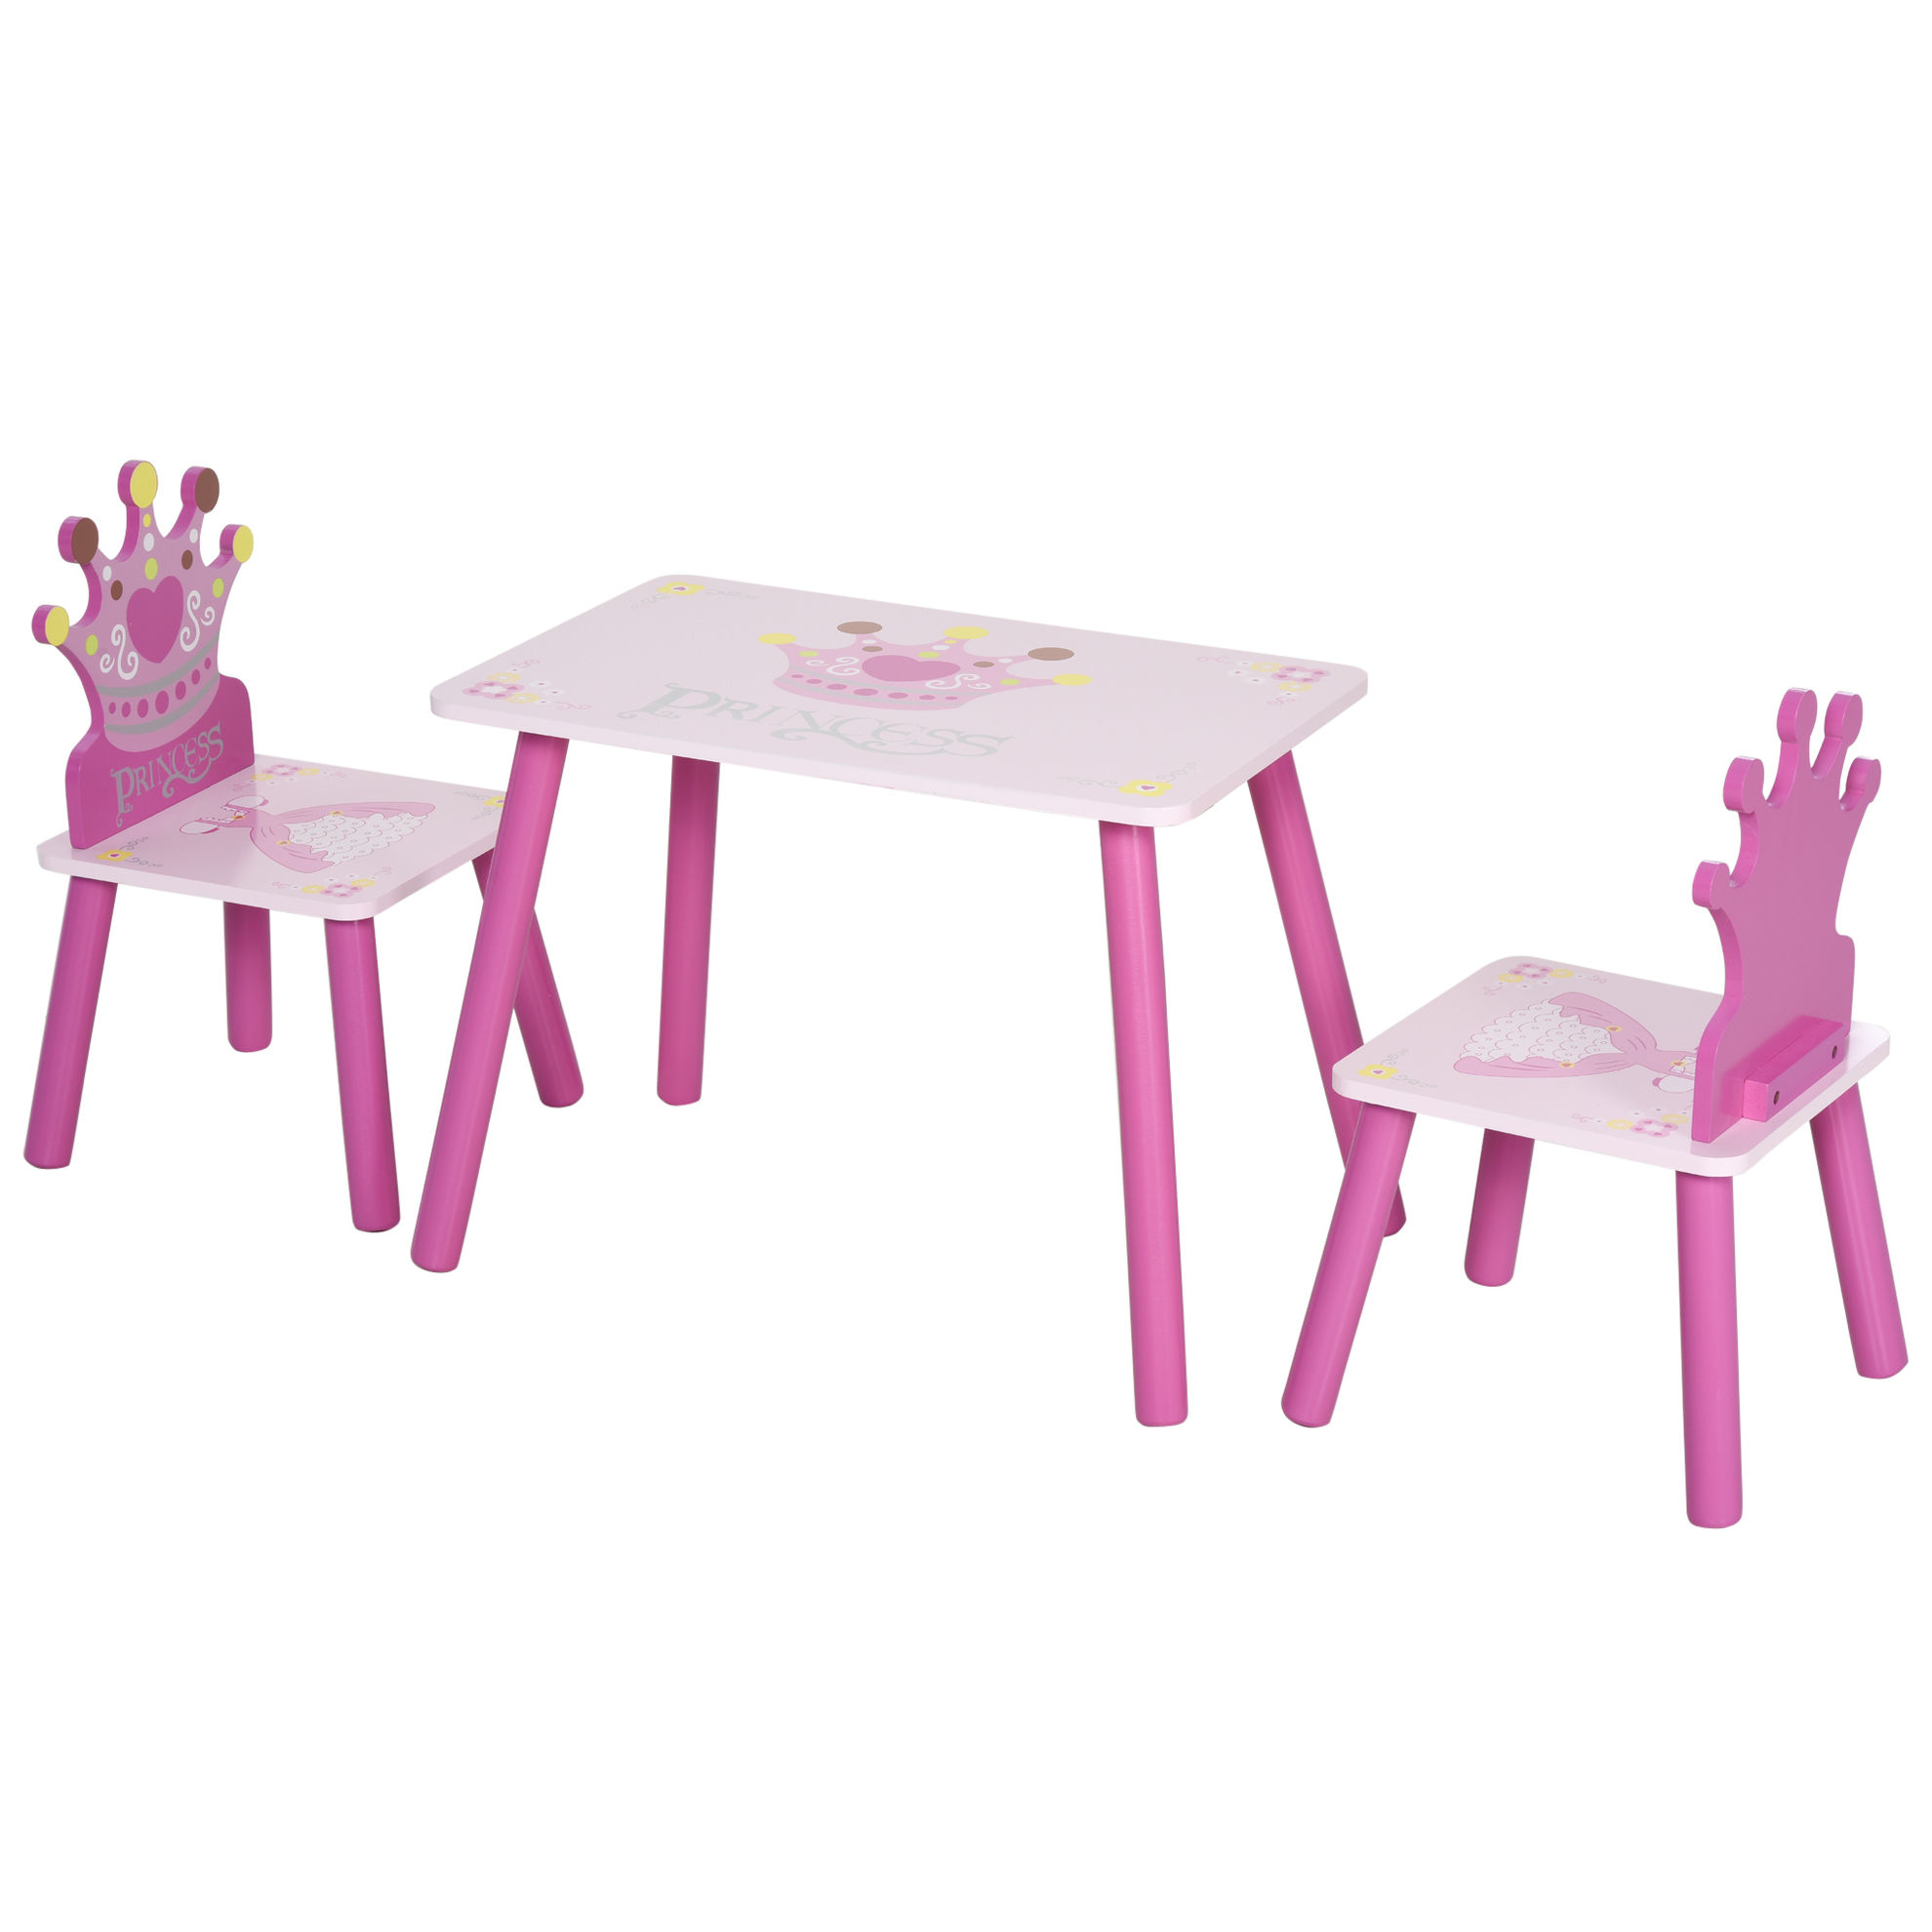 Prinzessinen Tisch mit Kinderstuhl bestellen | Weltbild.de